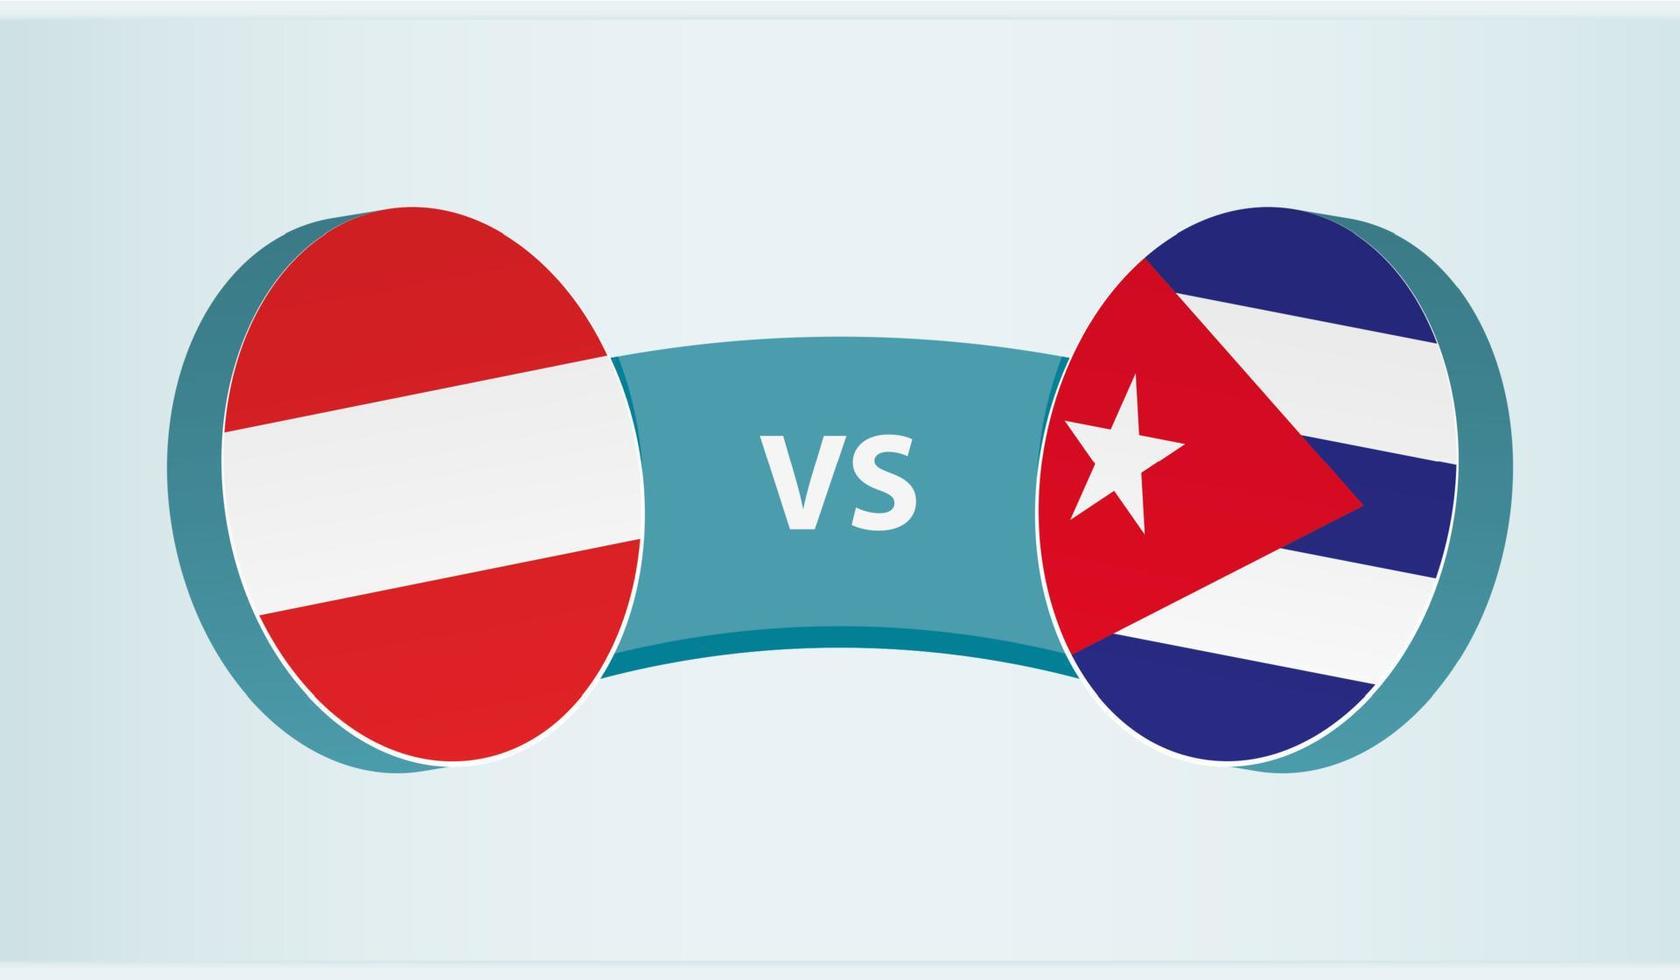 österrike mot Kuba, team sporter konkurrens begrepp. vektor